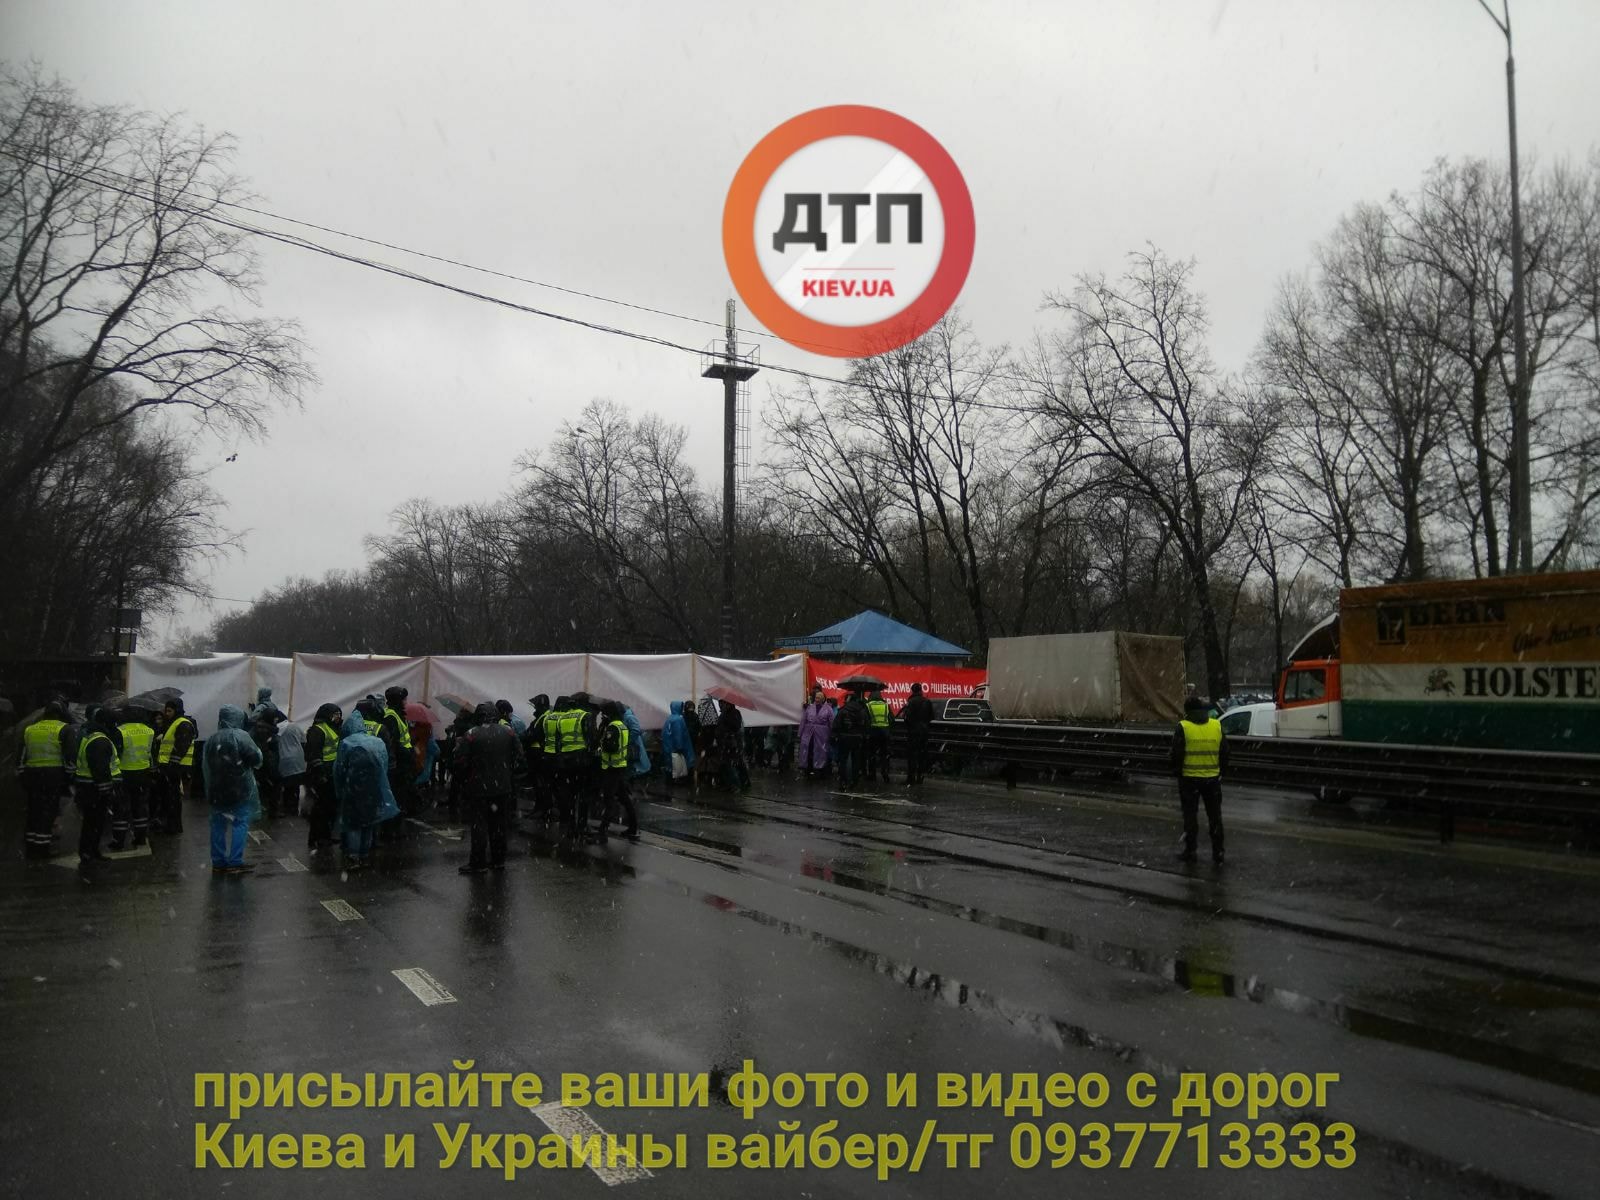 Автоновости: Одесскую трассу под Киевом парализовала акция протеста, фото — "Киев оперативный"